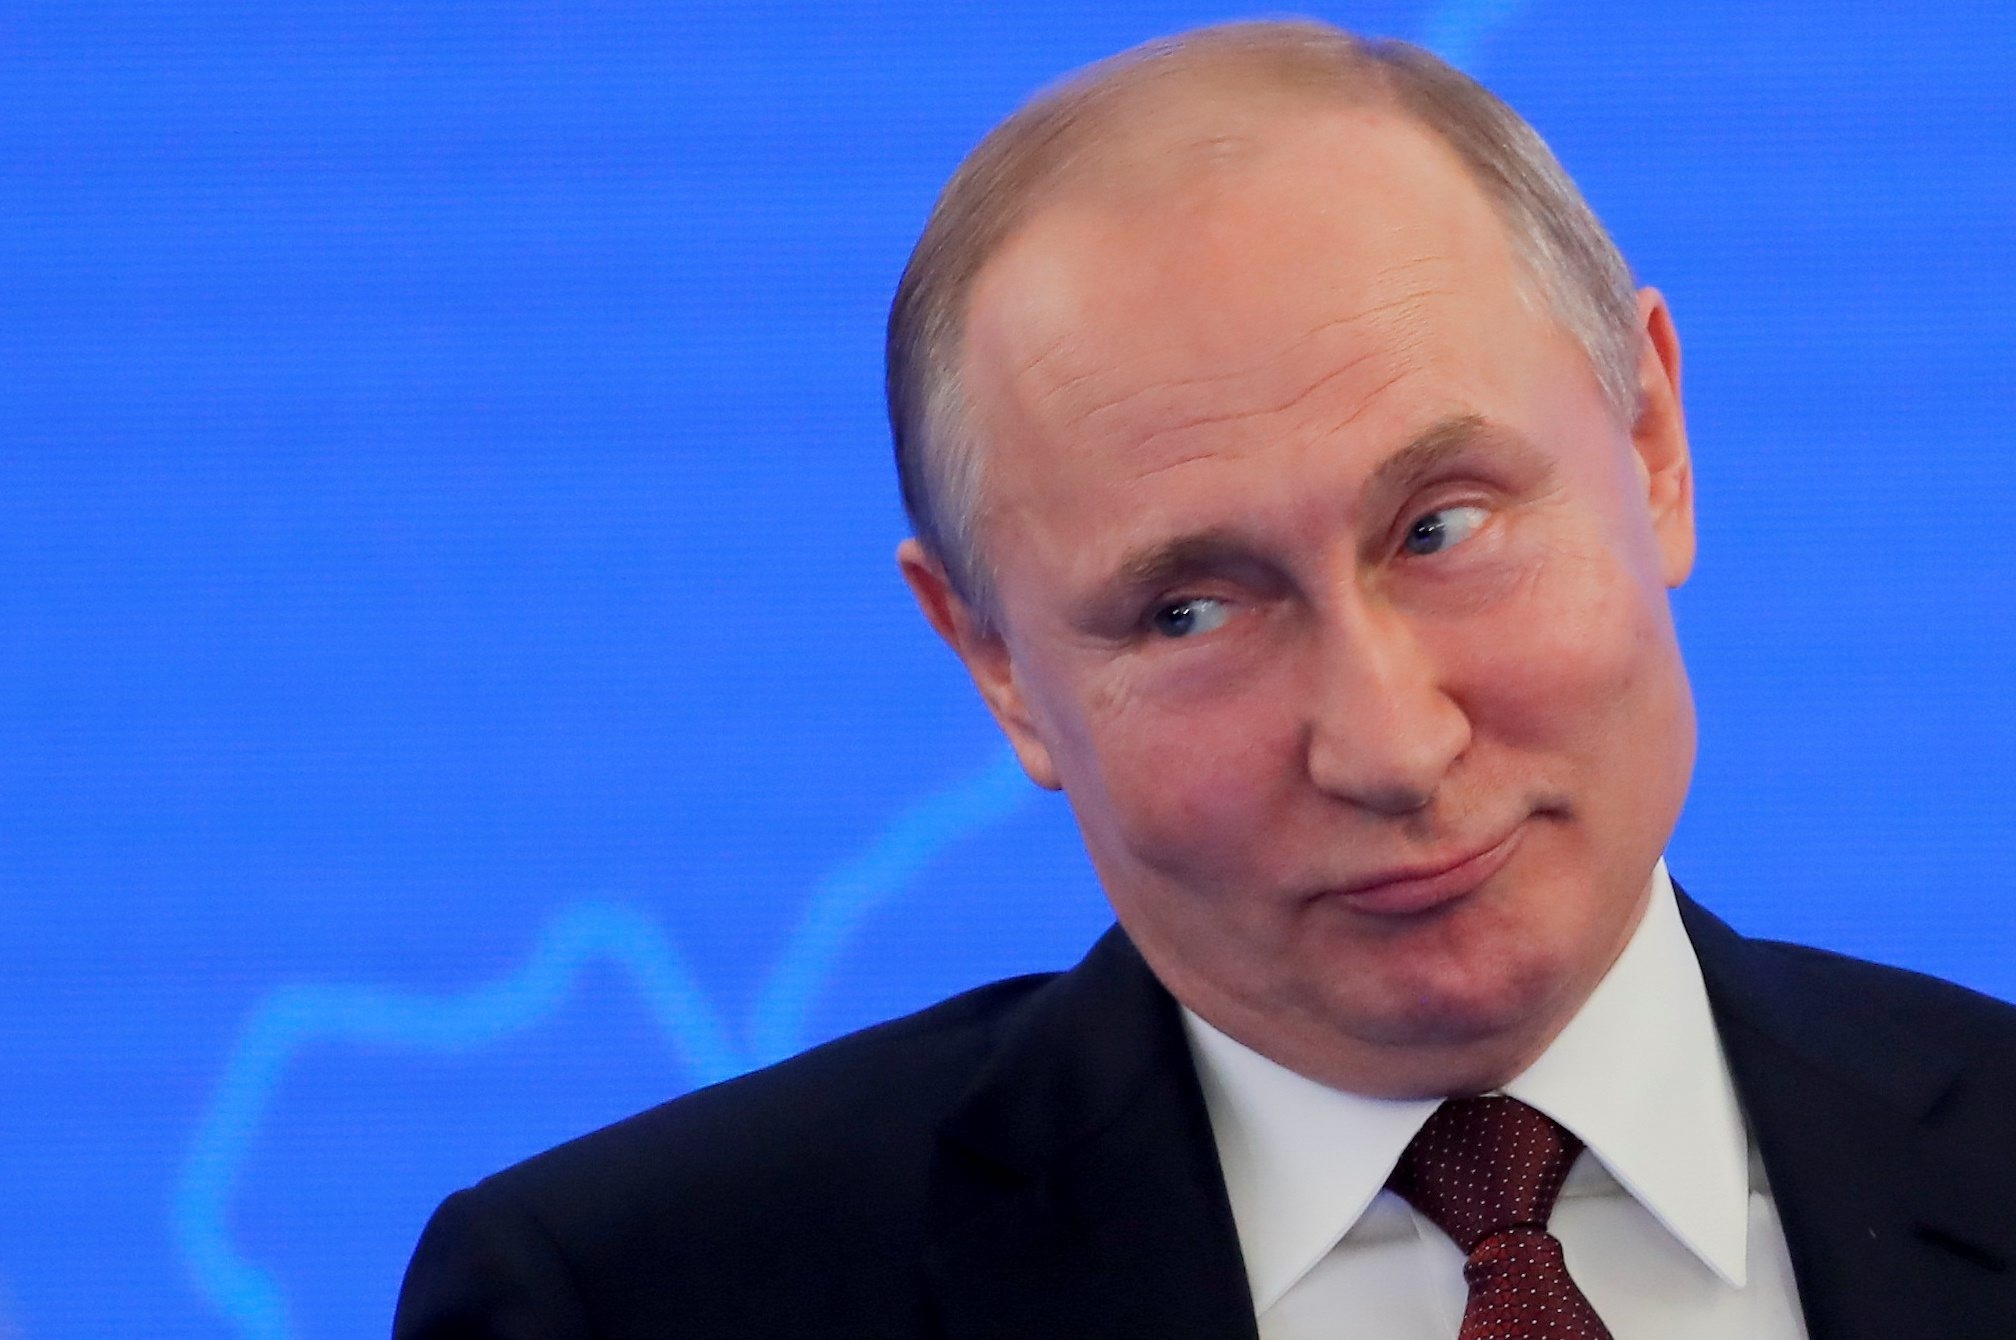 Telegraph: внезапный визит Путина в Калининград испугал приграничные страны ЕС